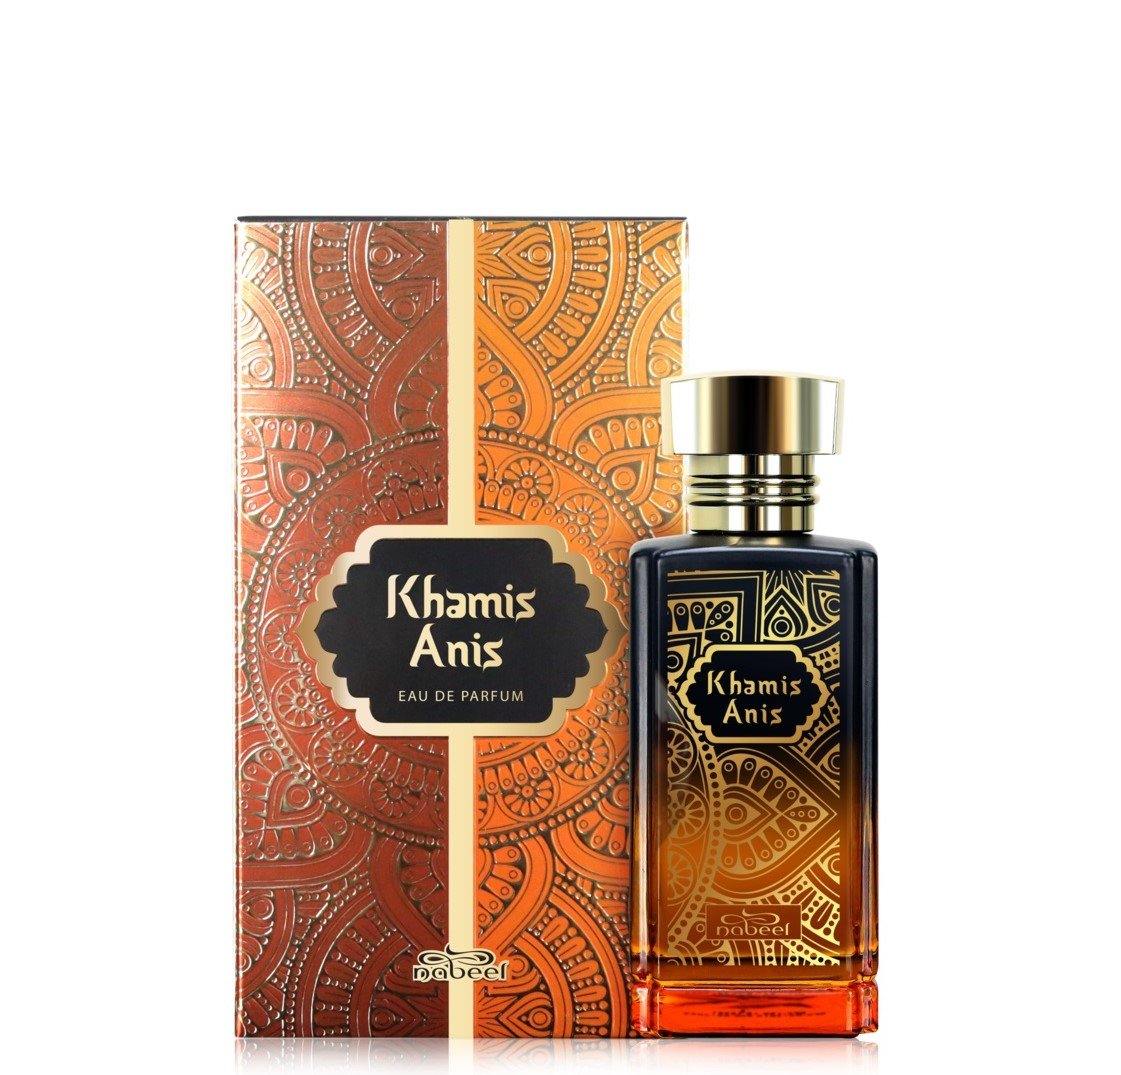 100 ml Eau de Parfum Khamis Anis cu Arome Oriental-Fructate pentru Femei și Bărbați - Galeria de Bijuterii